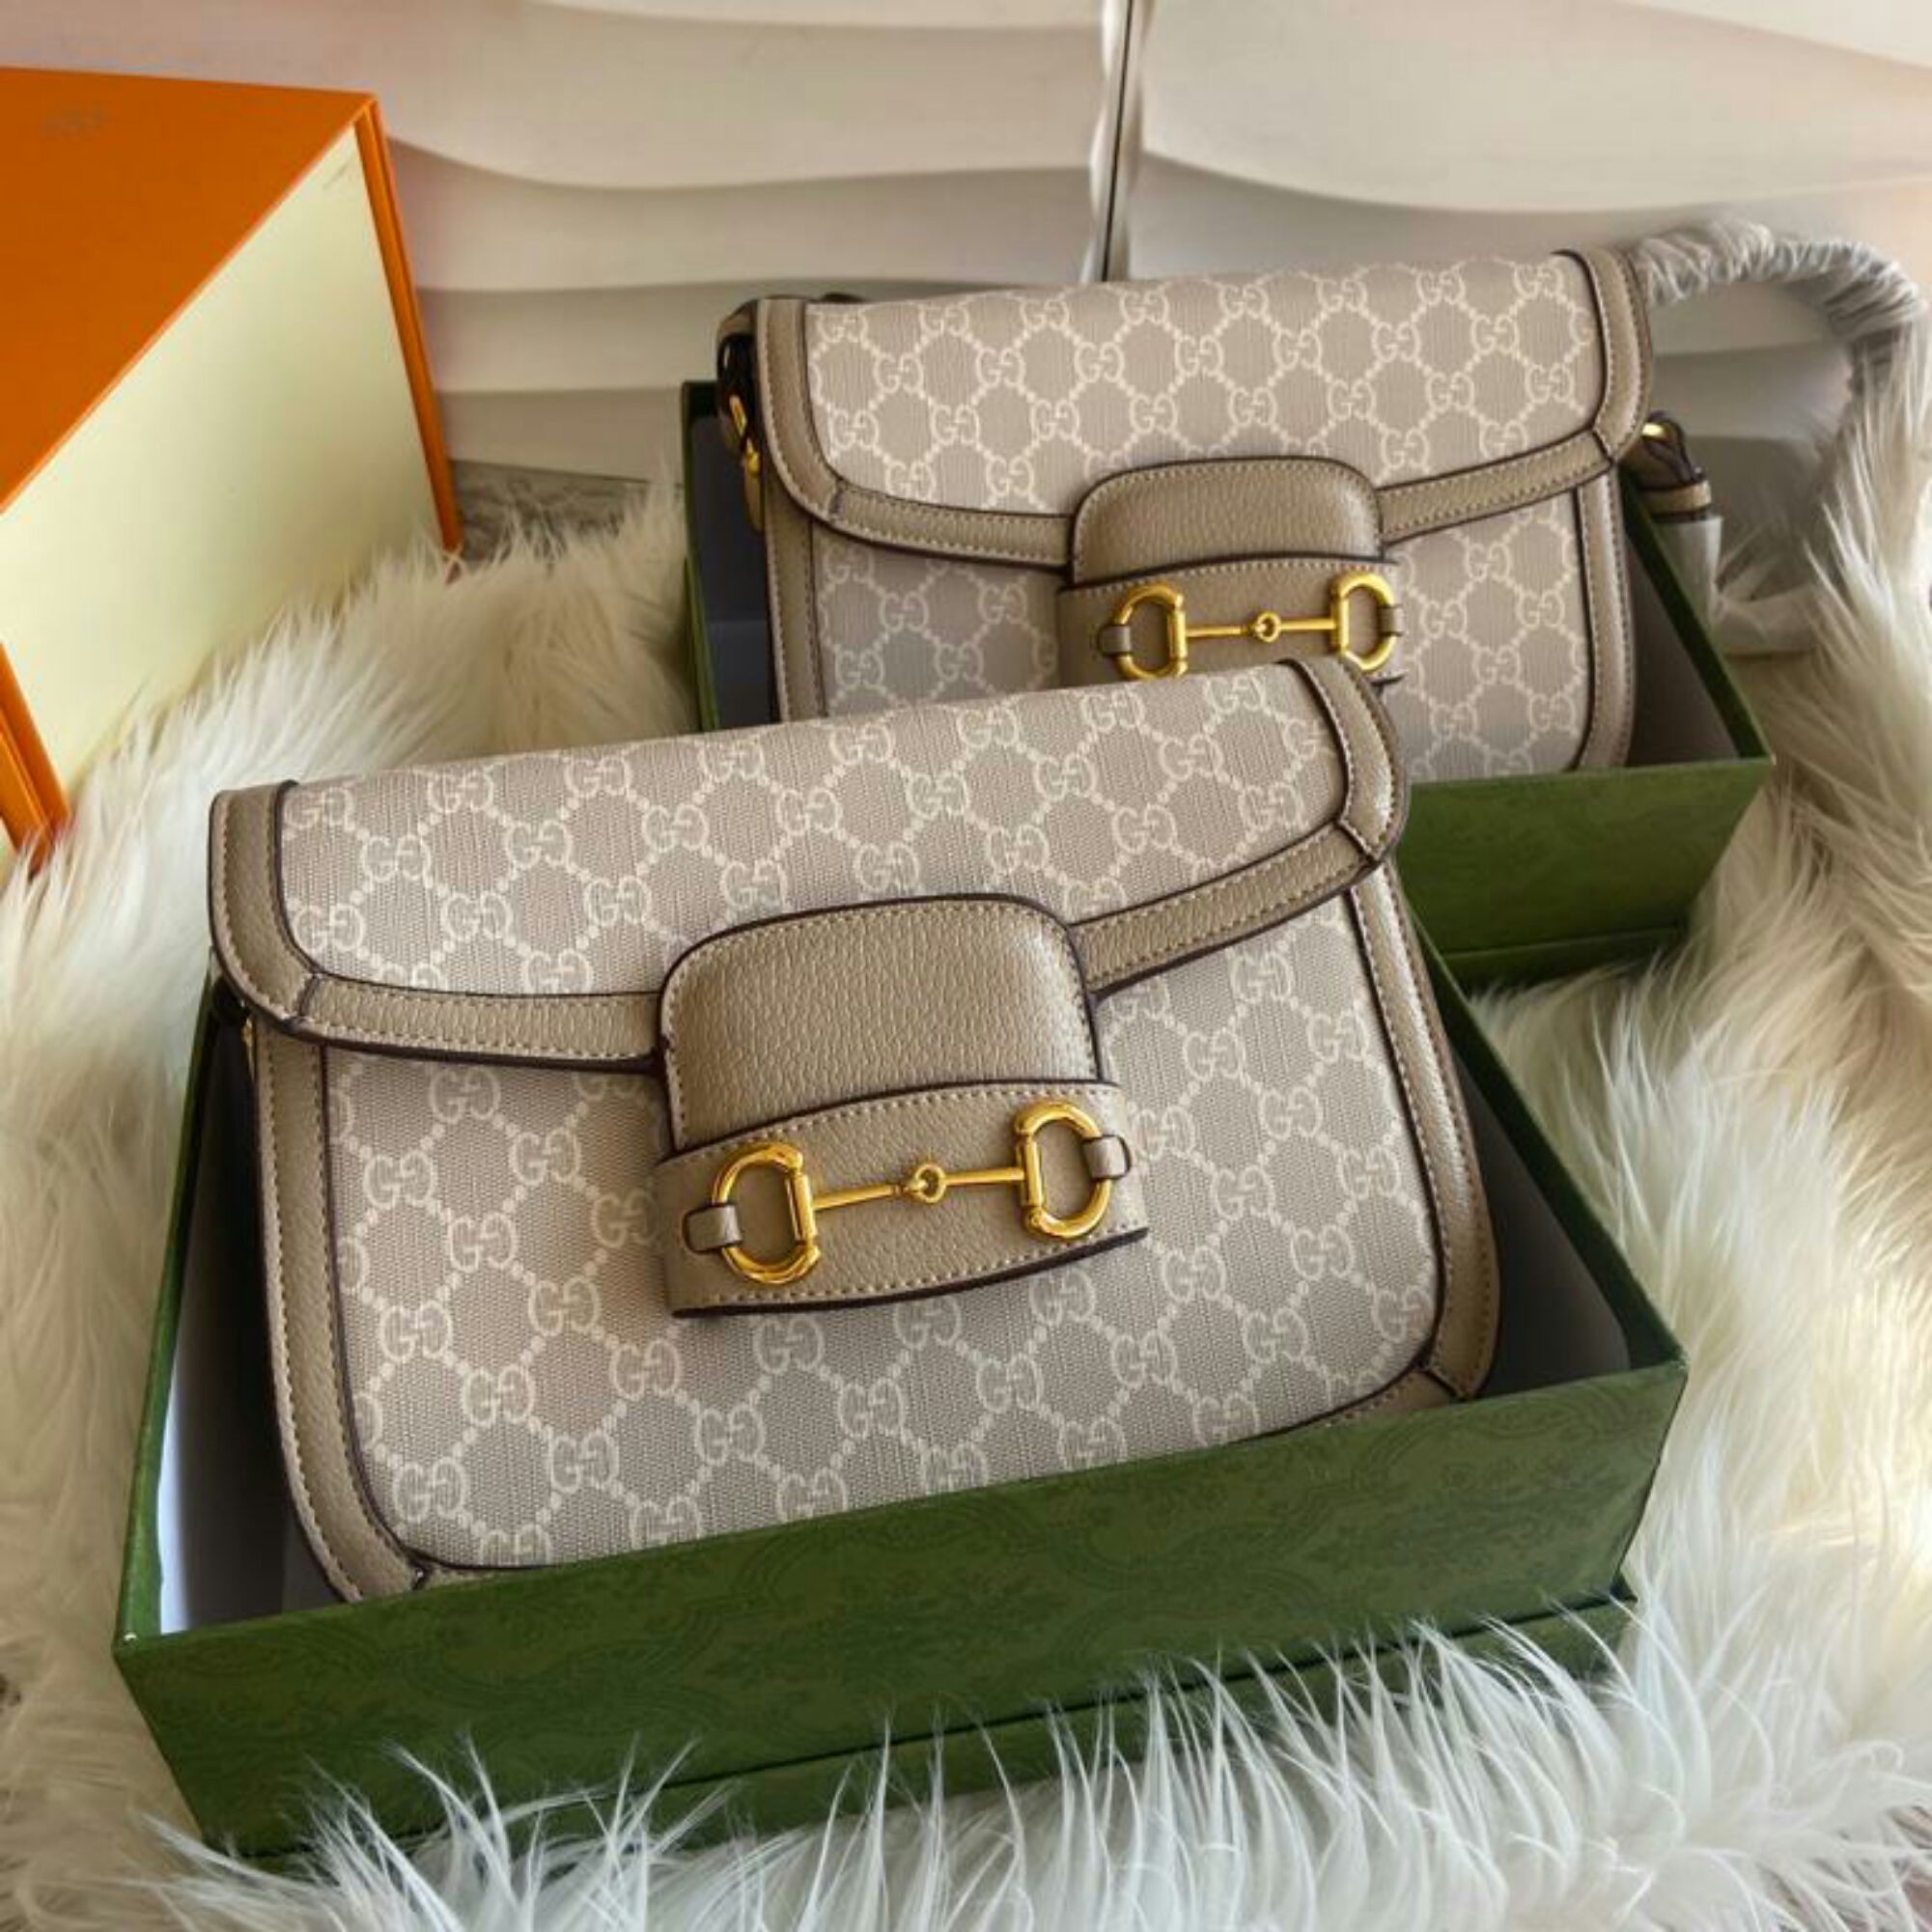 Jual Tas Gucci Tote Kanvas Set Dompet Super 258-1SV Terbaru oleh Raissa  Online Shop